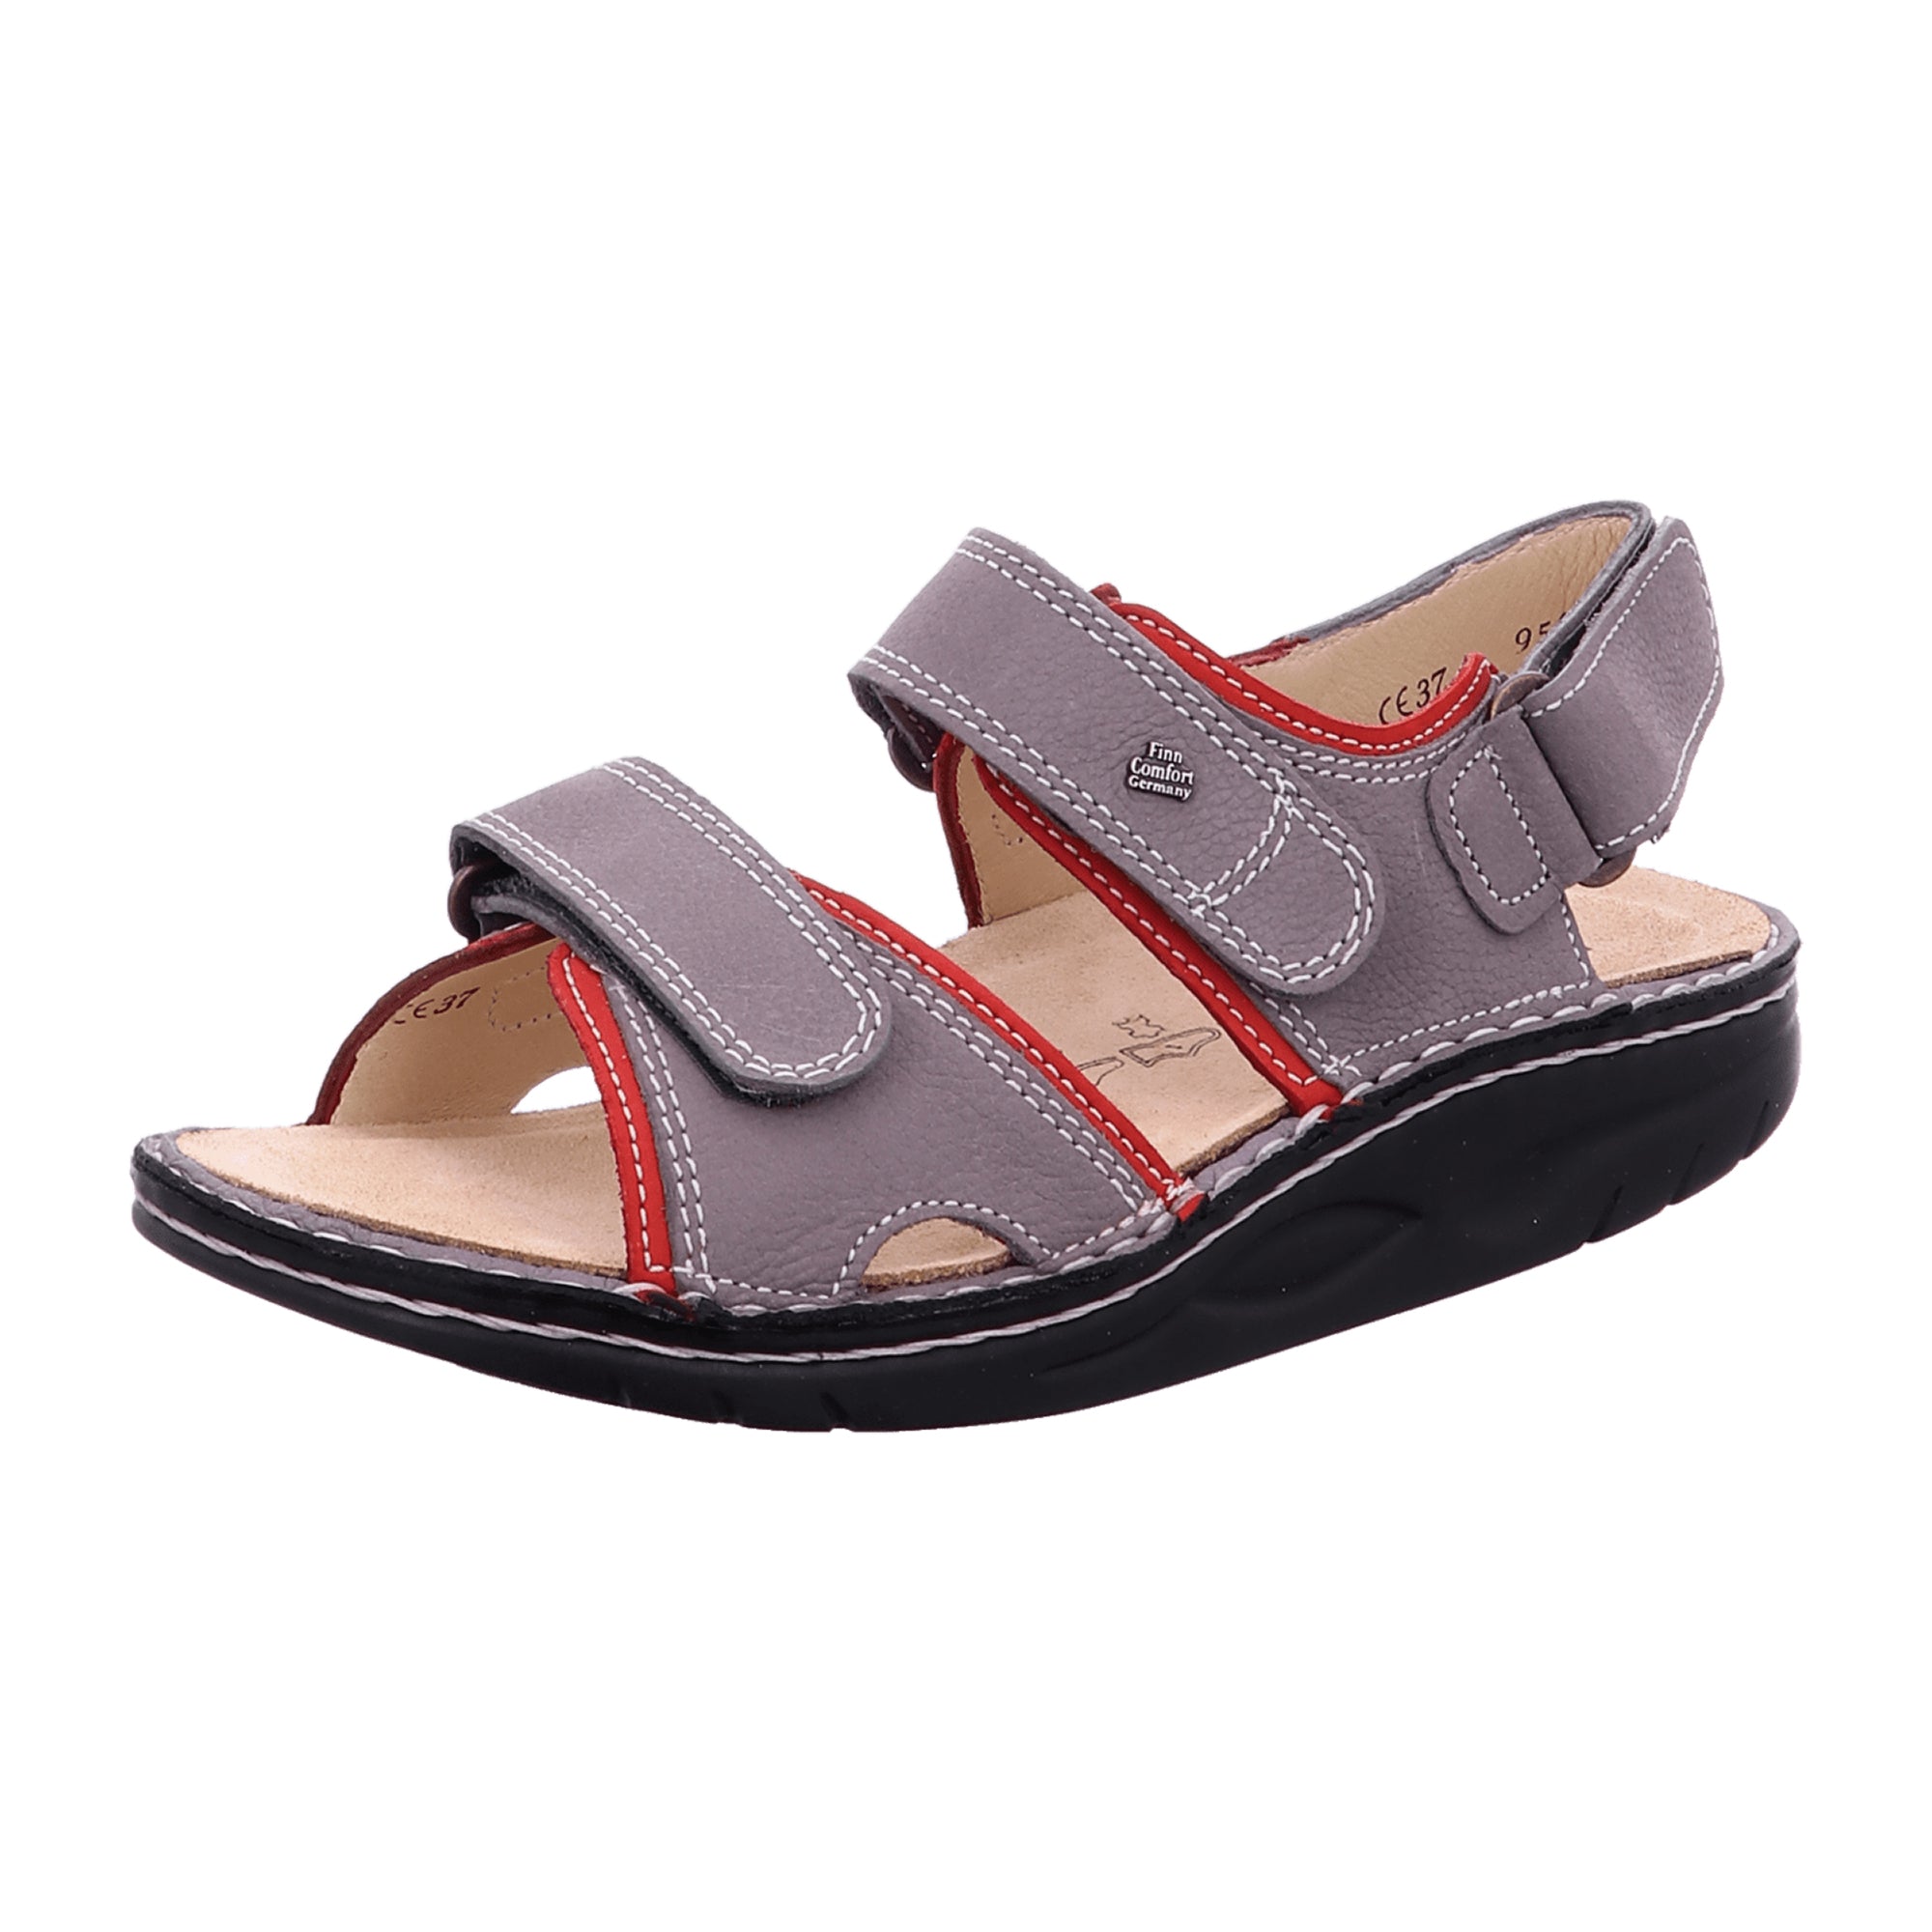 Finn Comfort Yuma Women's Sandals - Stylish & Durable in Grey